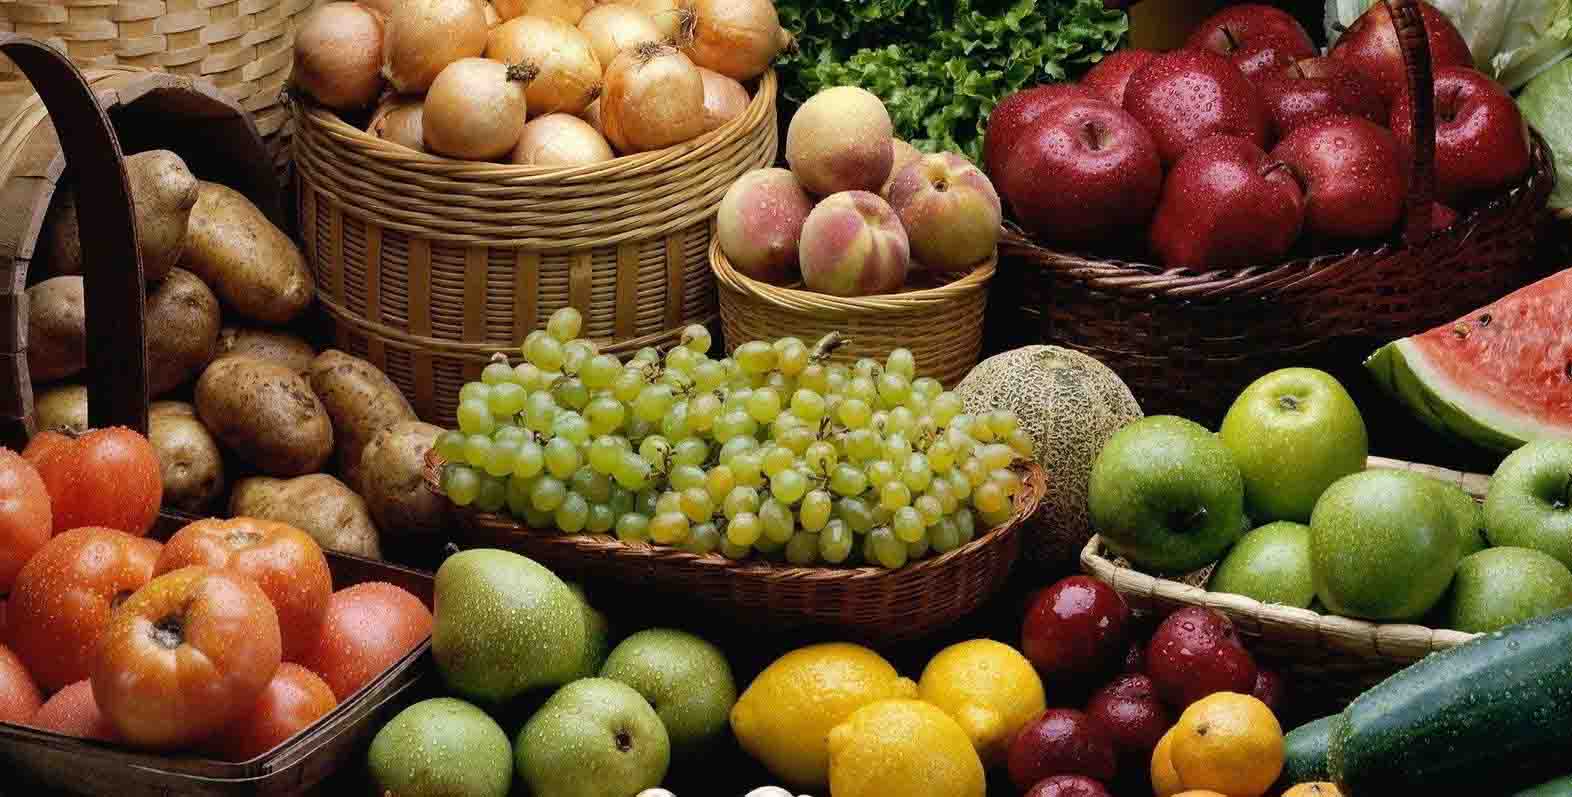 Completo Londres especificar Frutas y verduras: curiosidades - Blog de Naranjas LolaBlog de Naranjas Lola